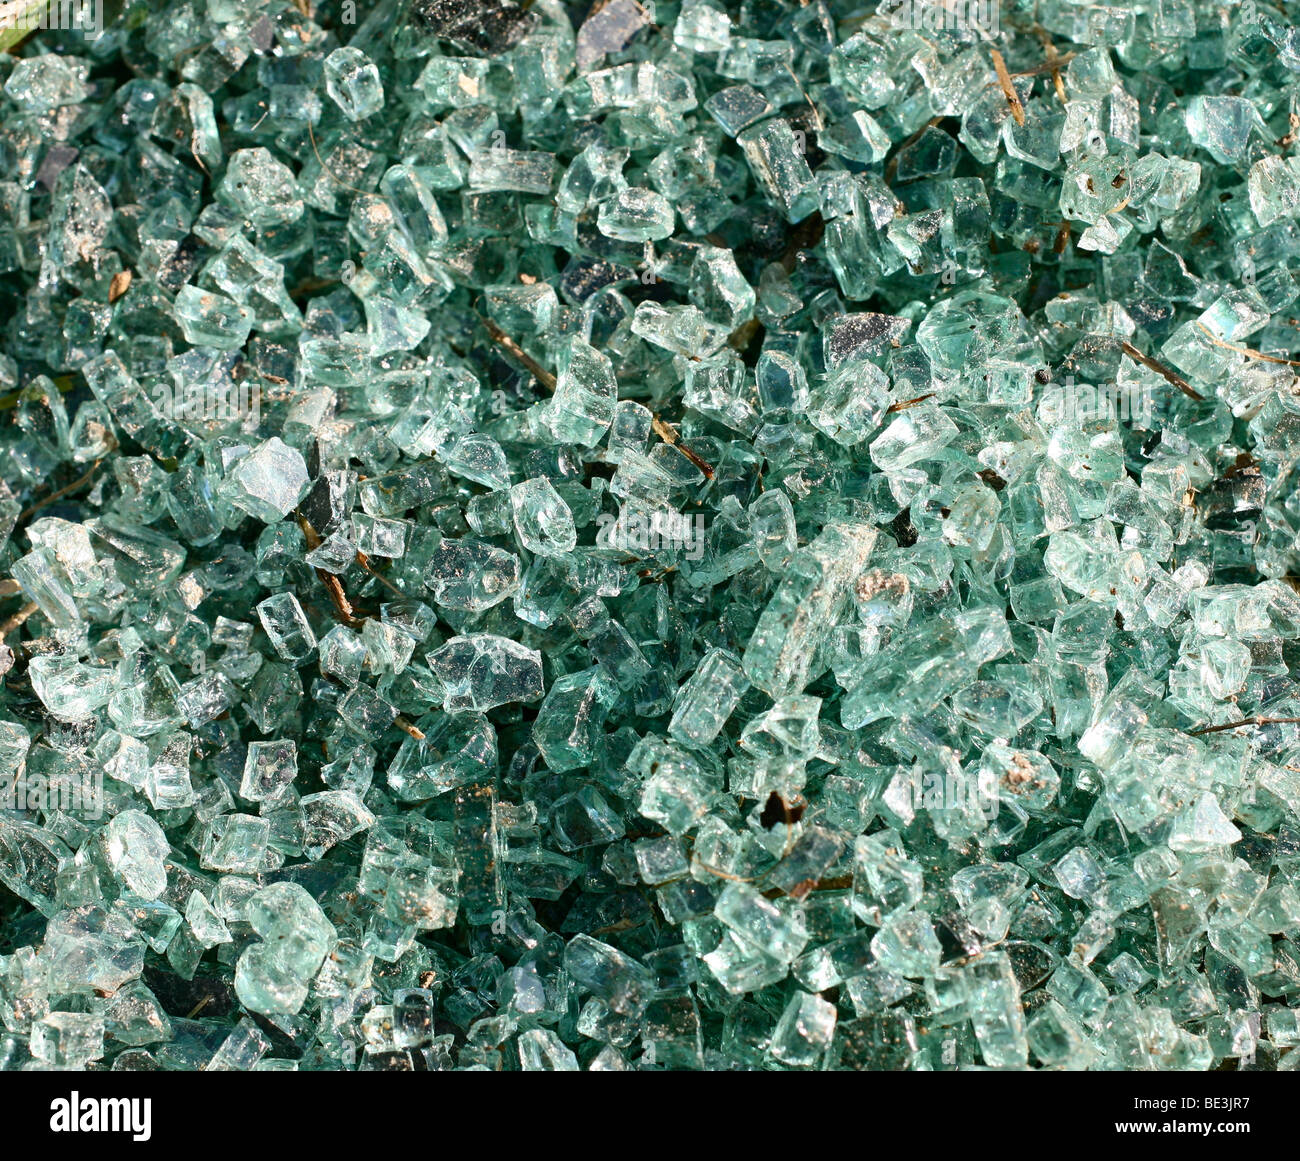 Azul-verde roto cristal parabrisas tumbado en la carretera Foto de stock